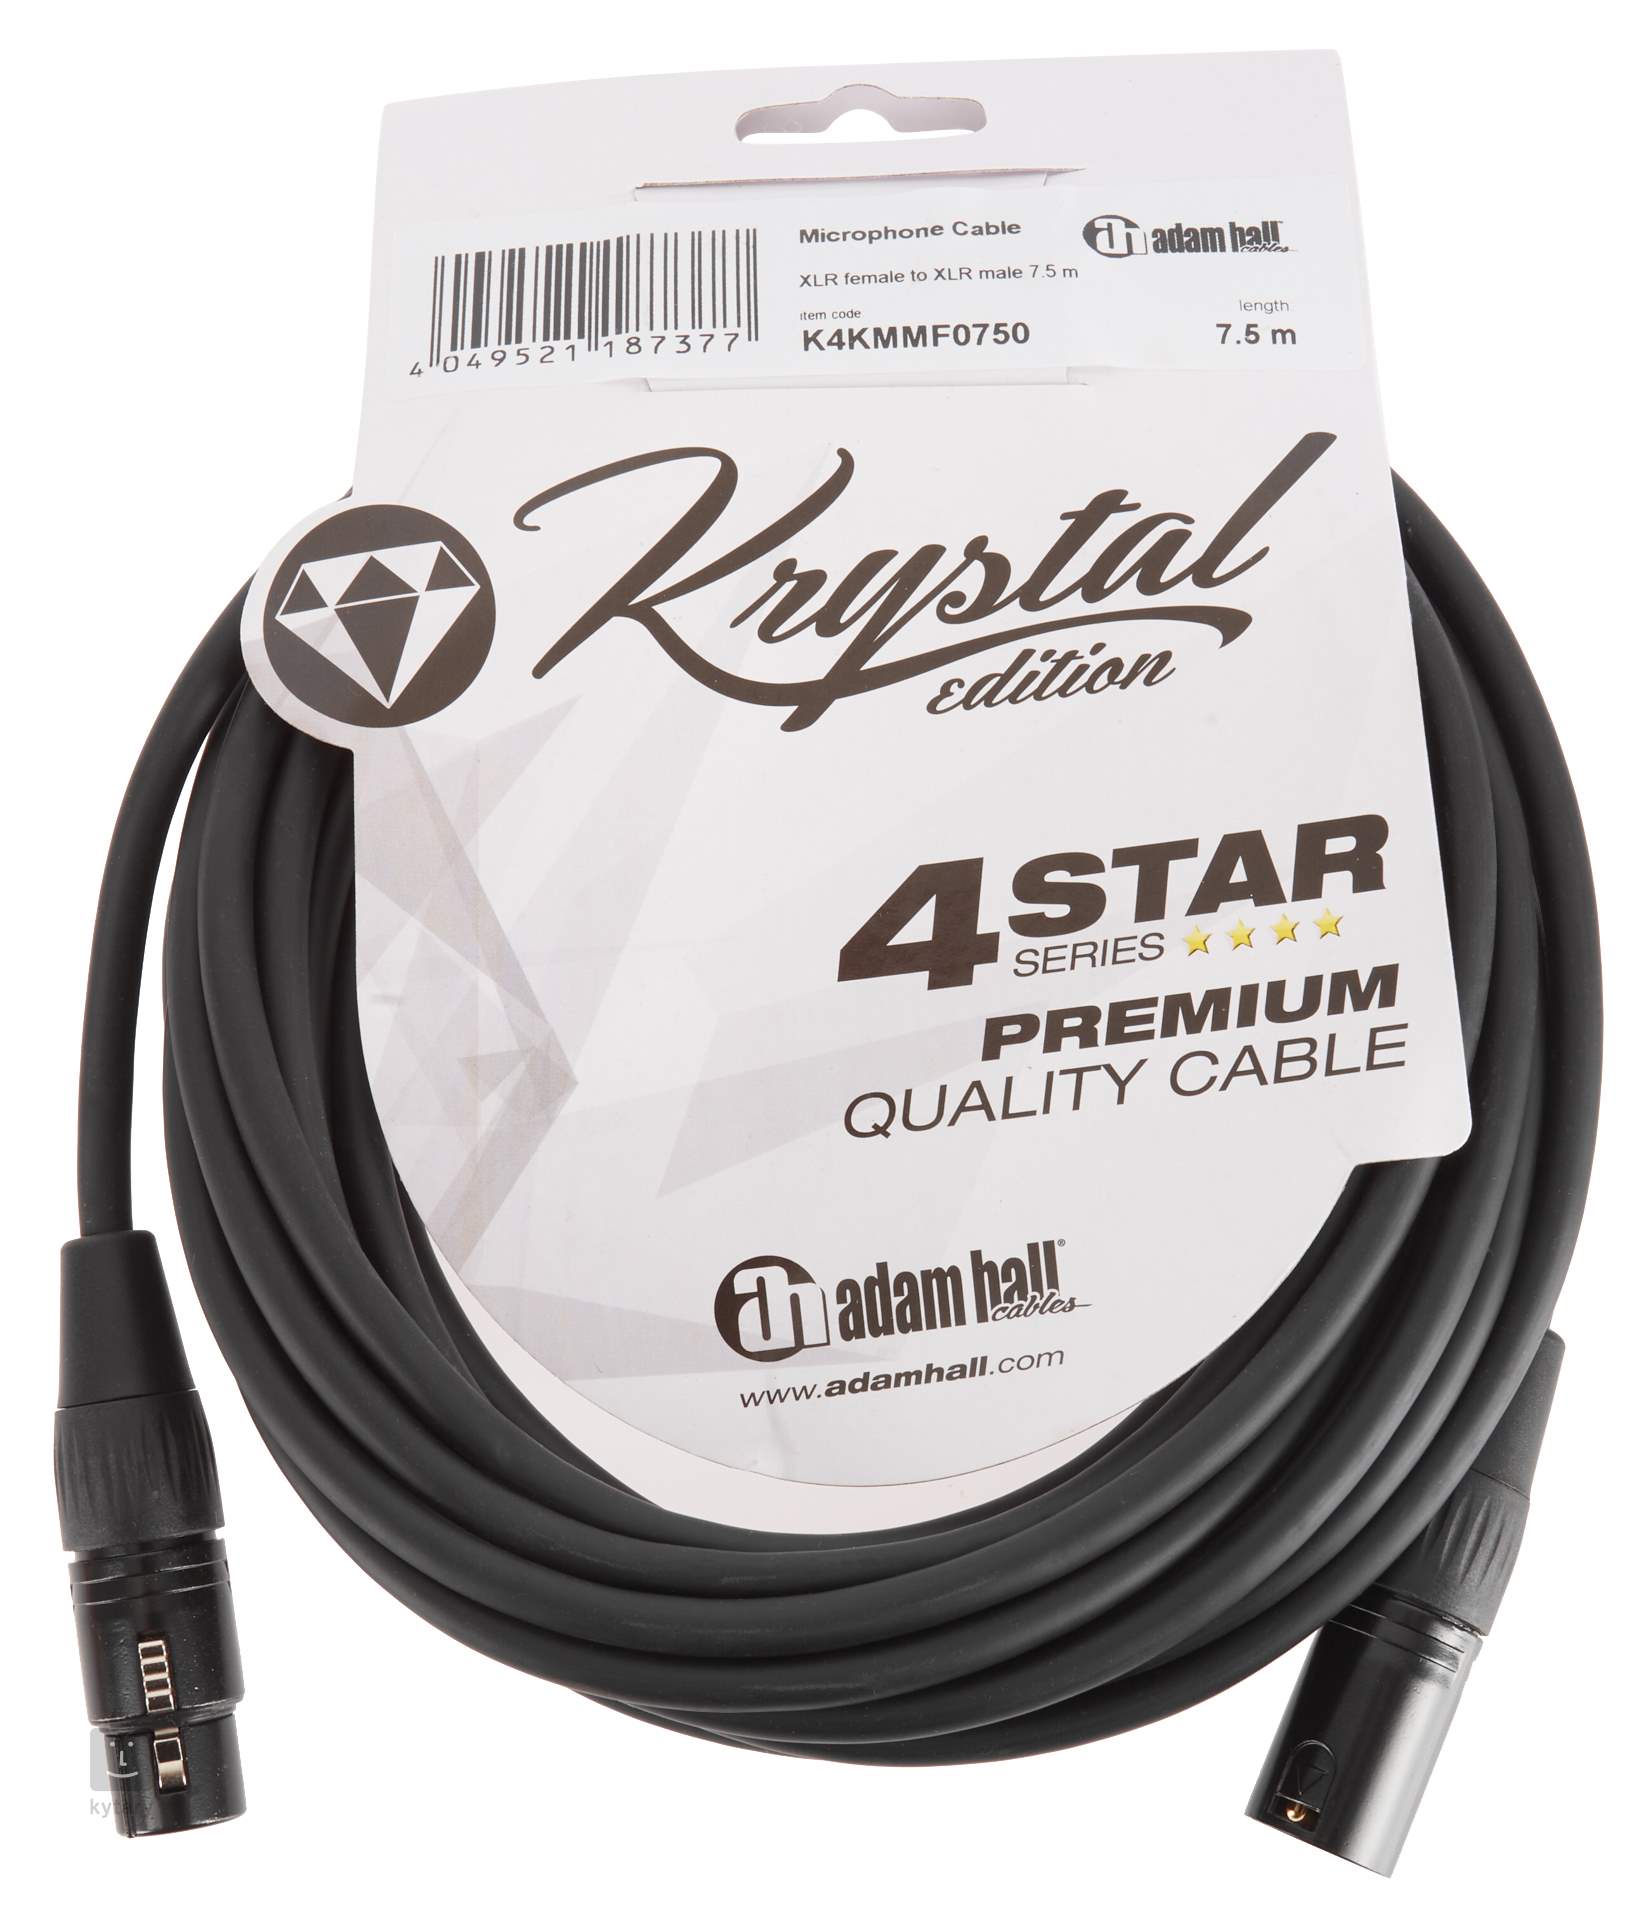 Descortés travesura desconcertado ADAM HALL Krystal Edition 0750 Cable para micrófono